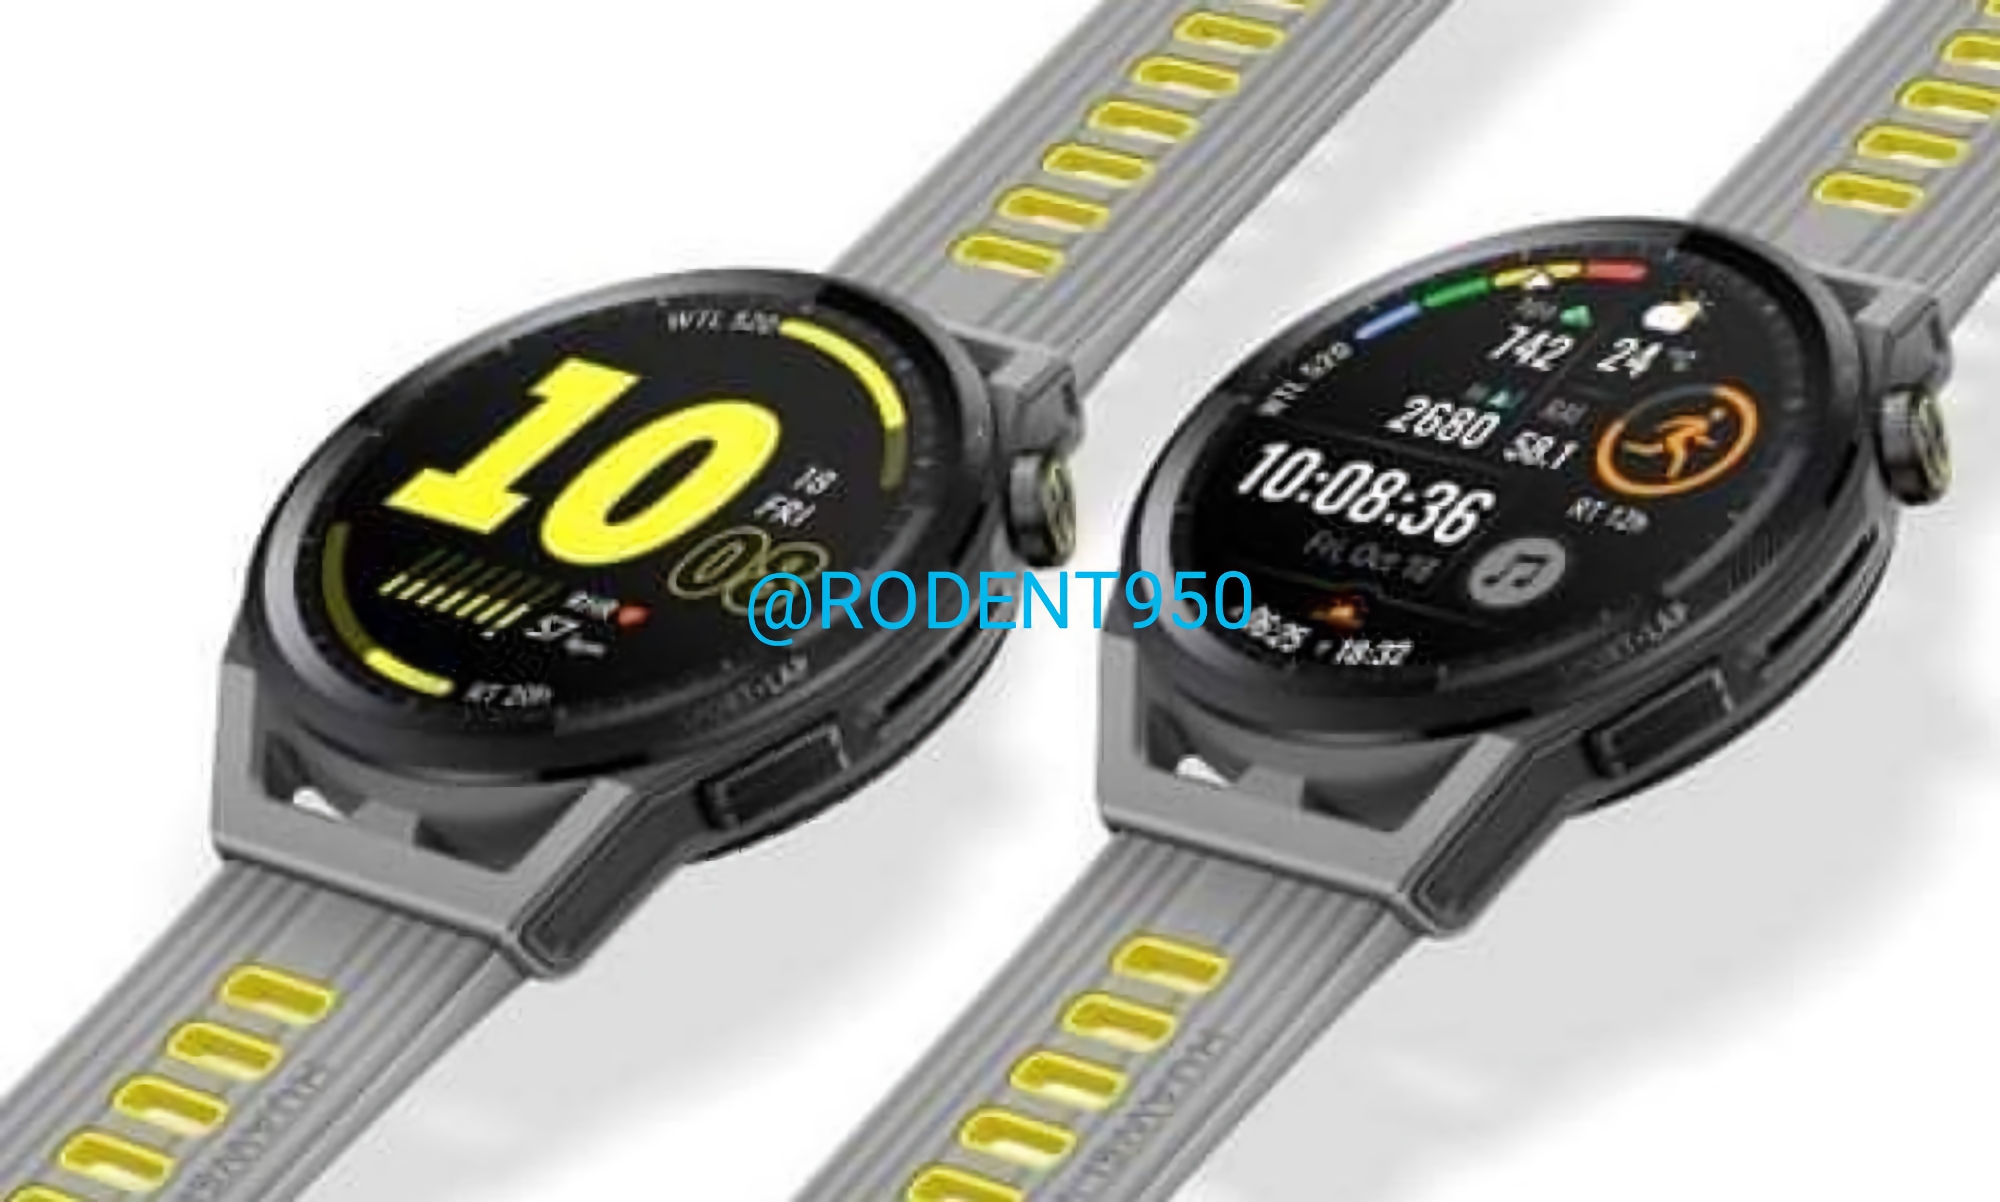 Tak będzie wyglądał Huawei Watch GT Runner - smartwatch dla biegaczy z zaawansowanym czujnikiem GPS